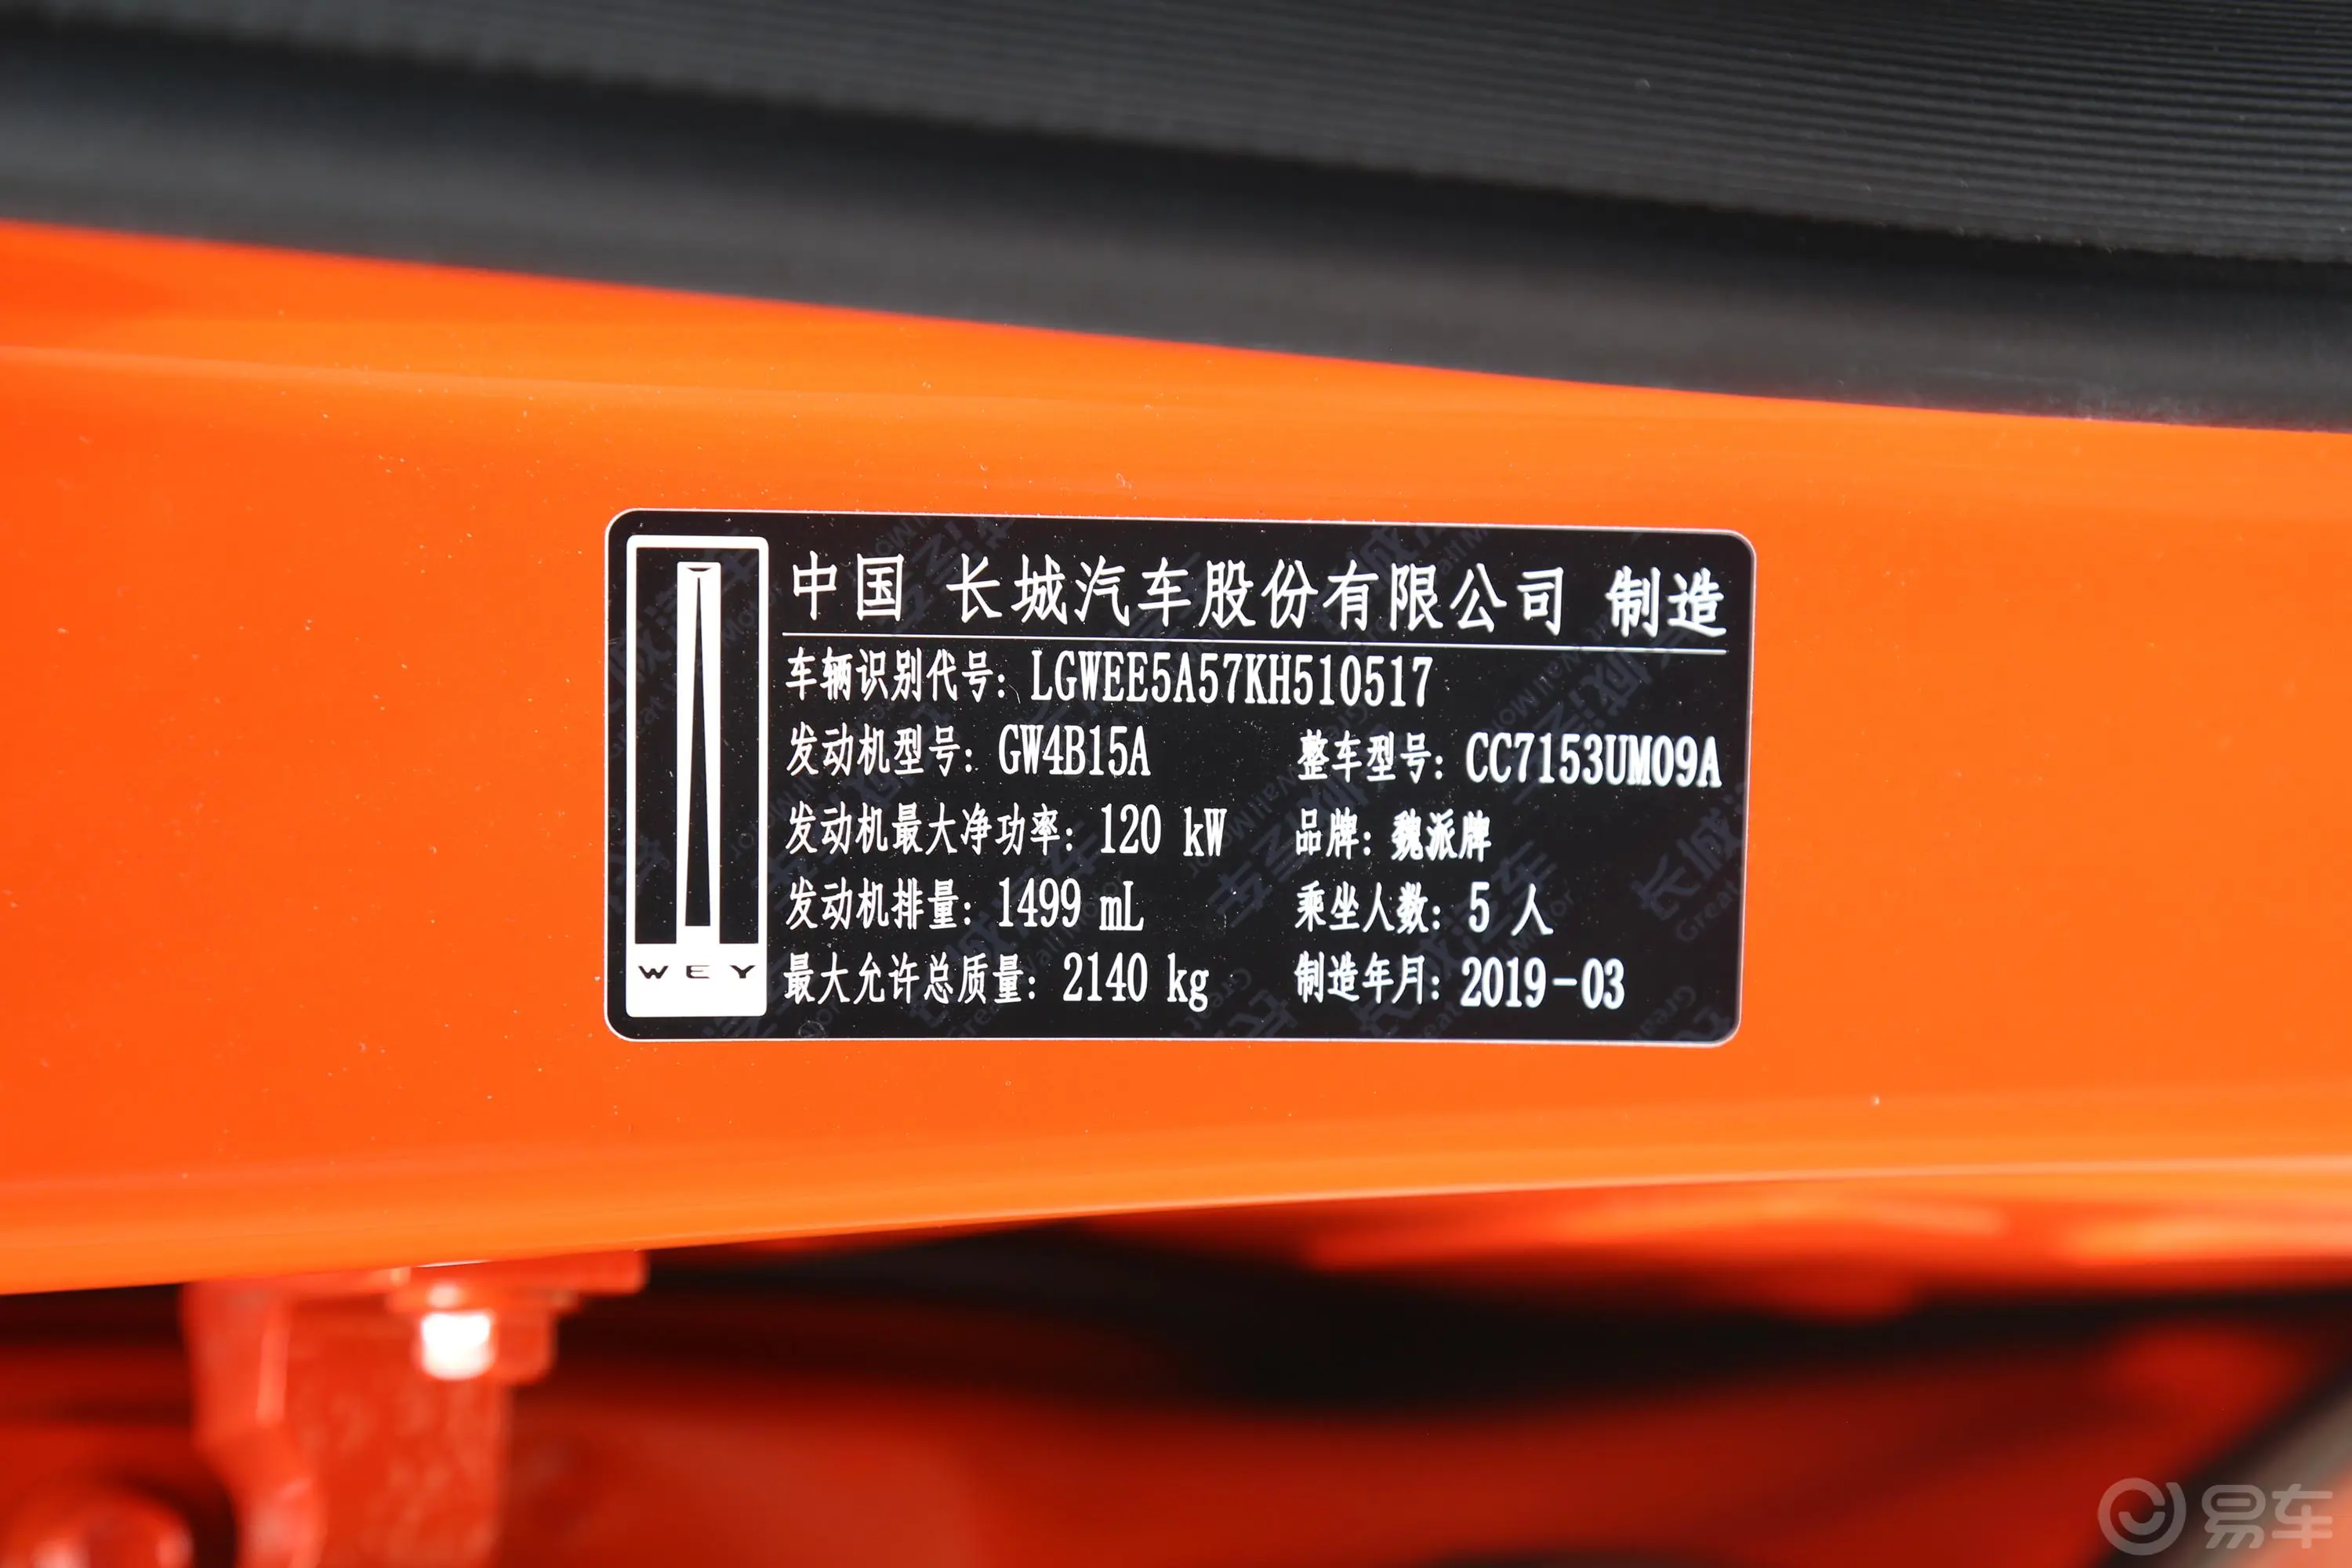 魏牌VV51.5T 双离合 两驱 倾橙限量版车辆信息铭牌